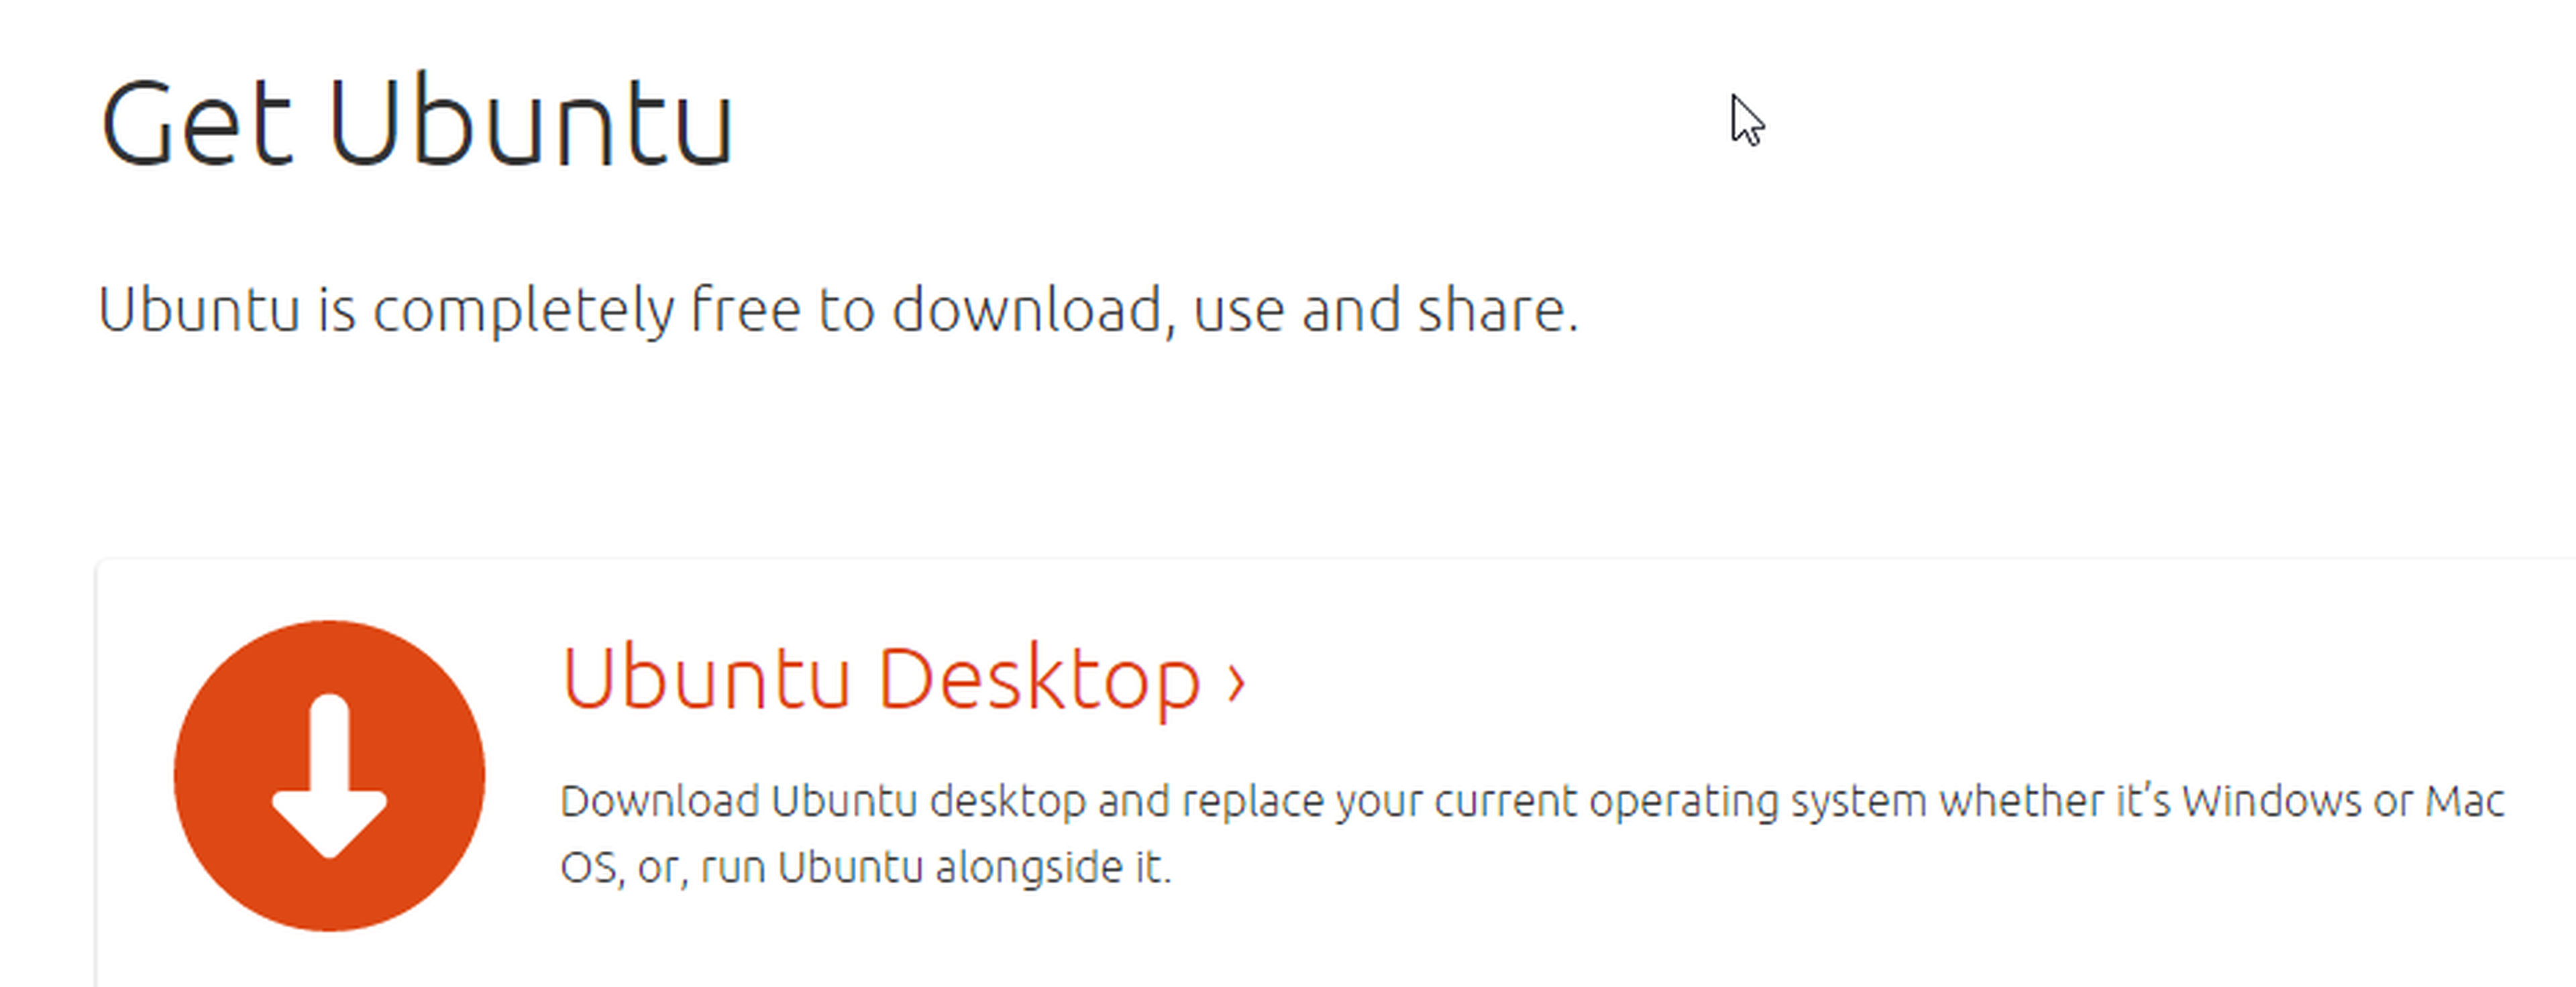 El primer paso es descargar el correspondiente fichero de Ubuntu